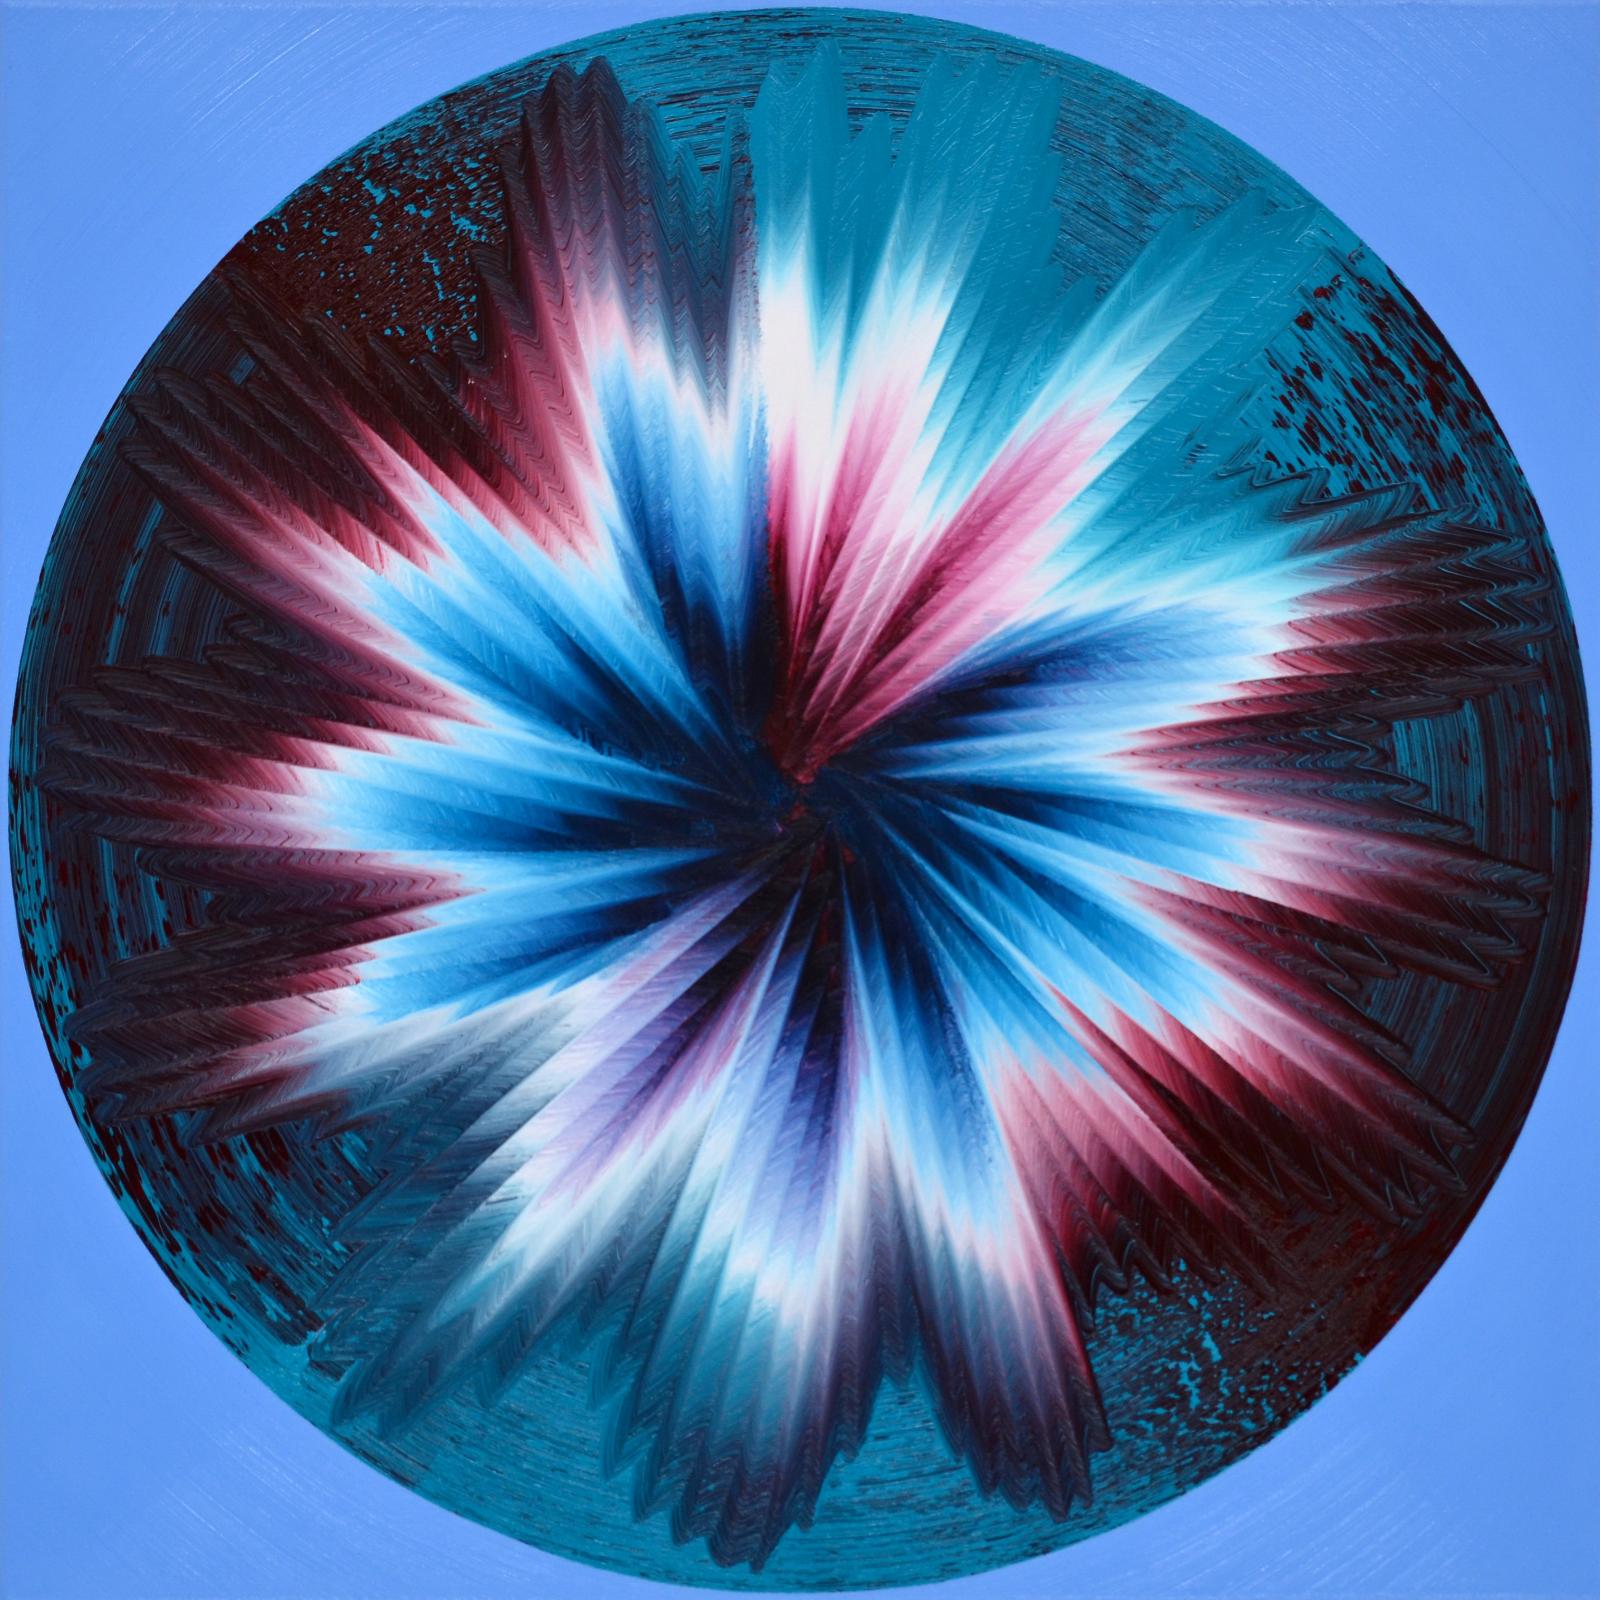 Vera Leutloff, Circular Oszillation Januar - Königsblau hell, 2021, Öl auf Leinwand, 60 cm x 60 cm, Preis auf Anfrage